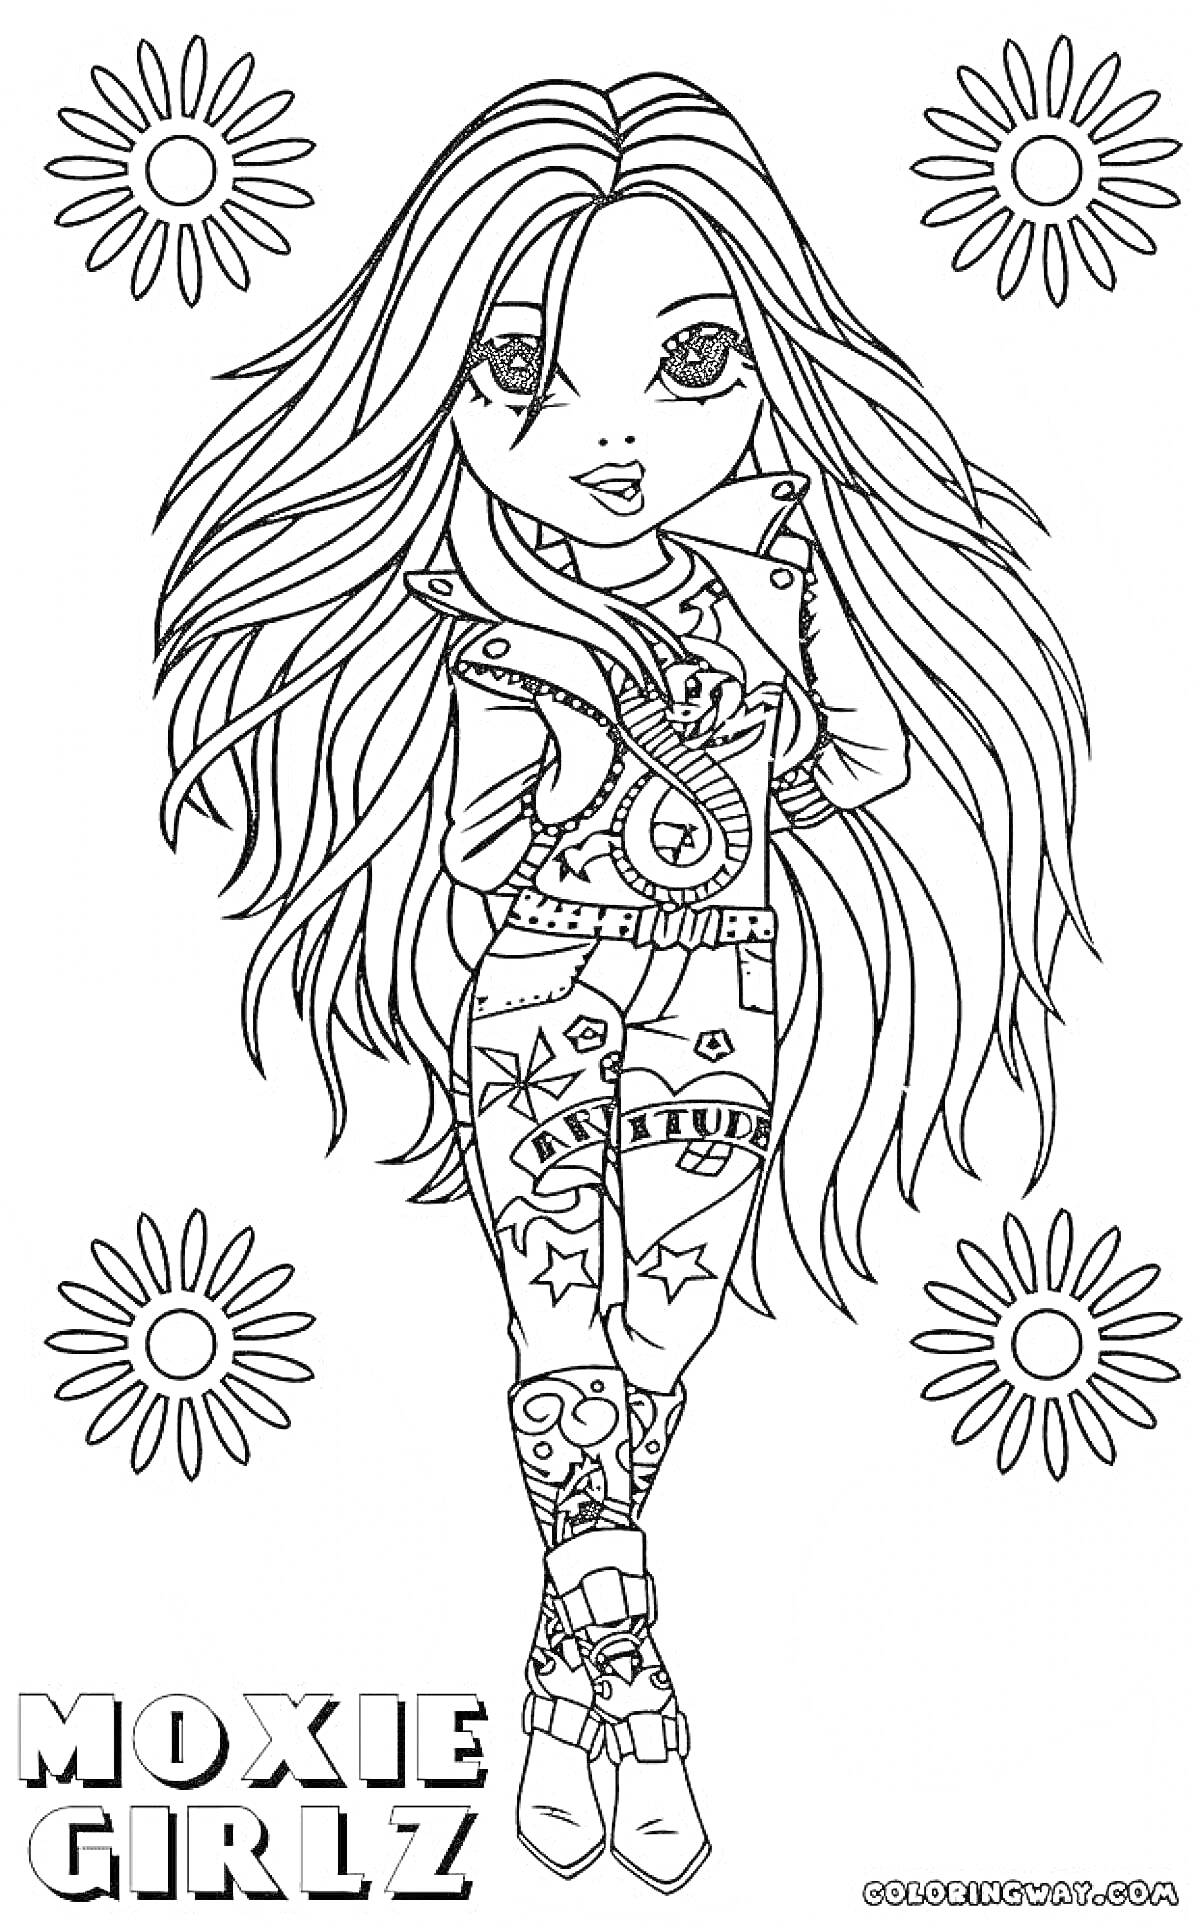 Девочка Moxie Girlz с длинными волосами, одетая в стильную одежду с узорами и ботинки, окружённая четырьмя цветочками